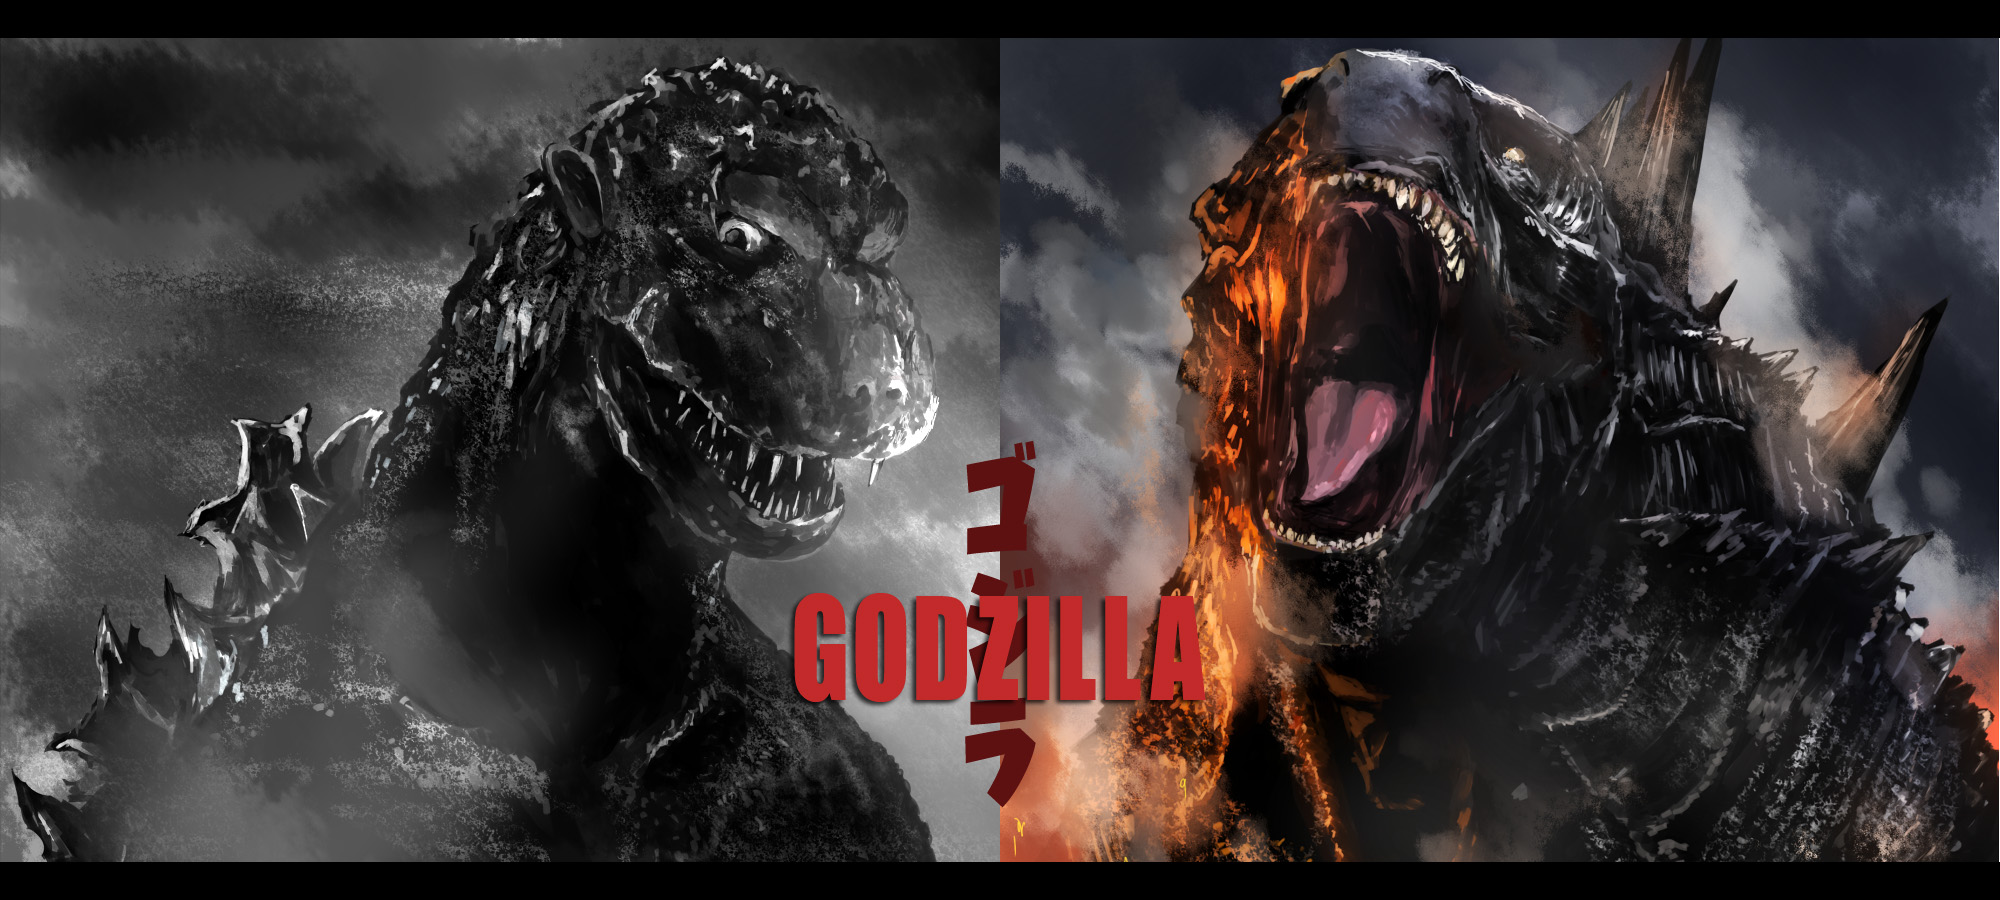 圧倒的破壊力 大迫力 戦うゴジライラスト集の画像 01 Godzilla